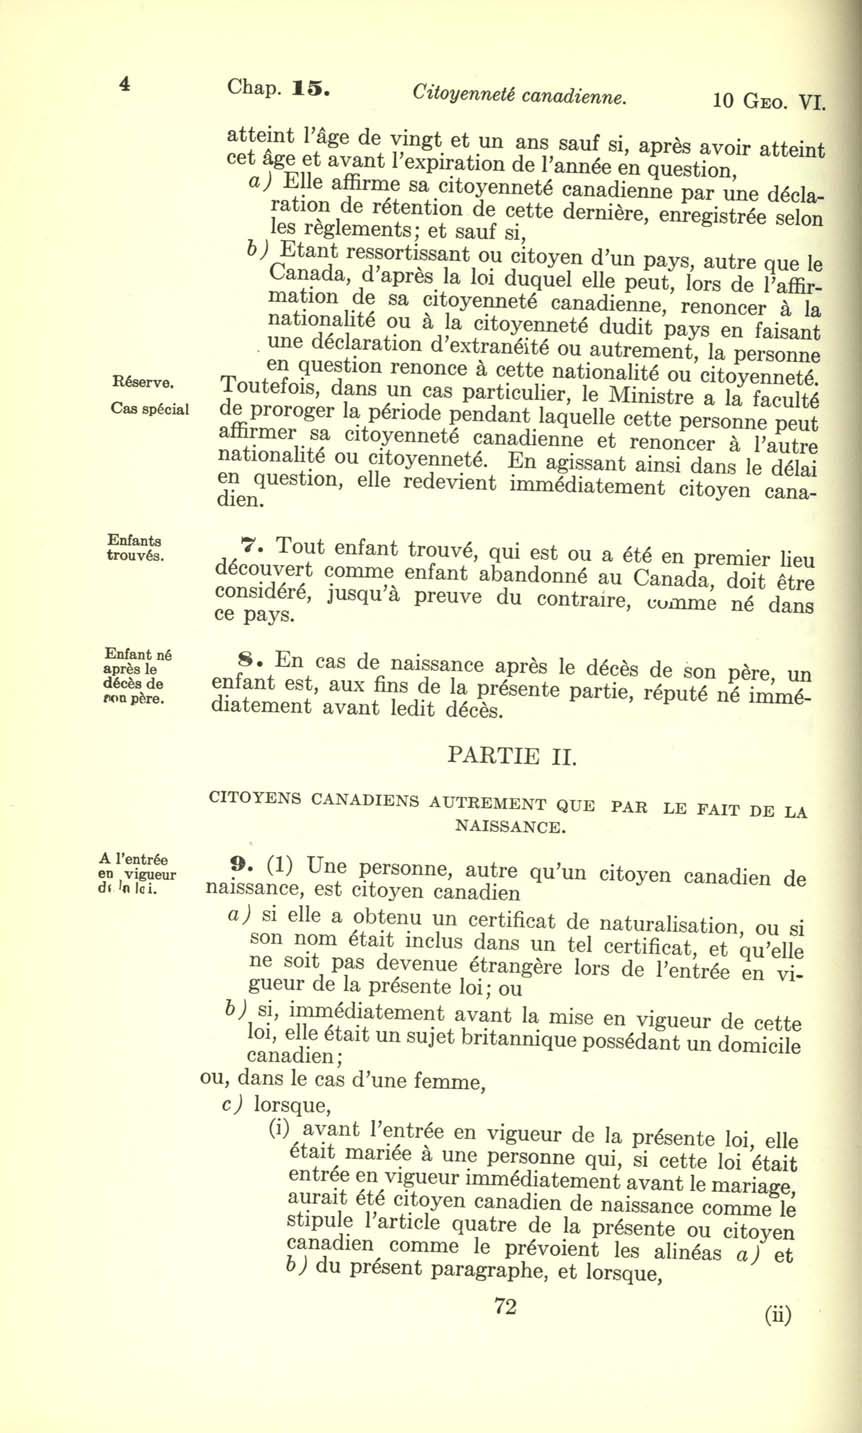 Chap. 15 Page 72 Loi sur la citoyenneté canadienne, 1947